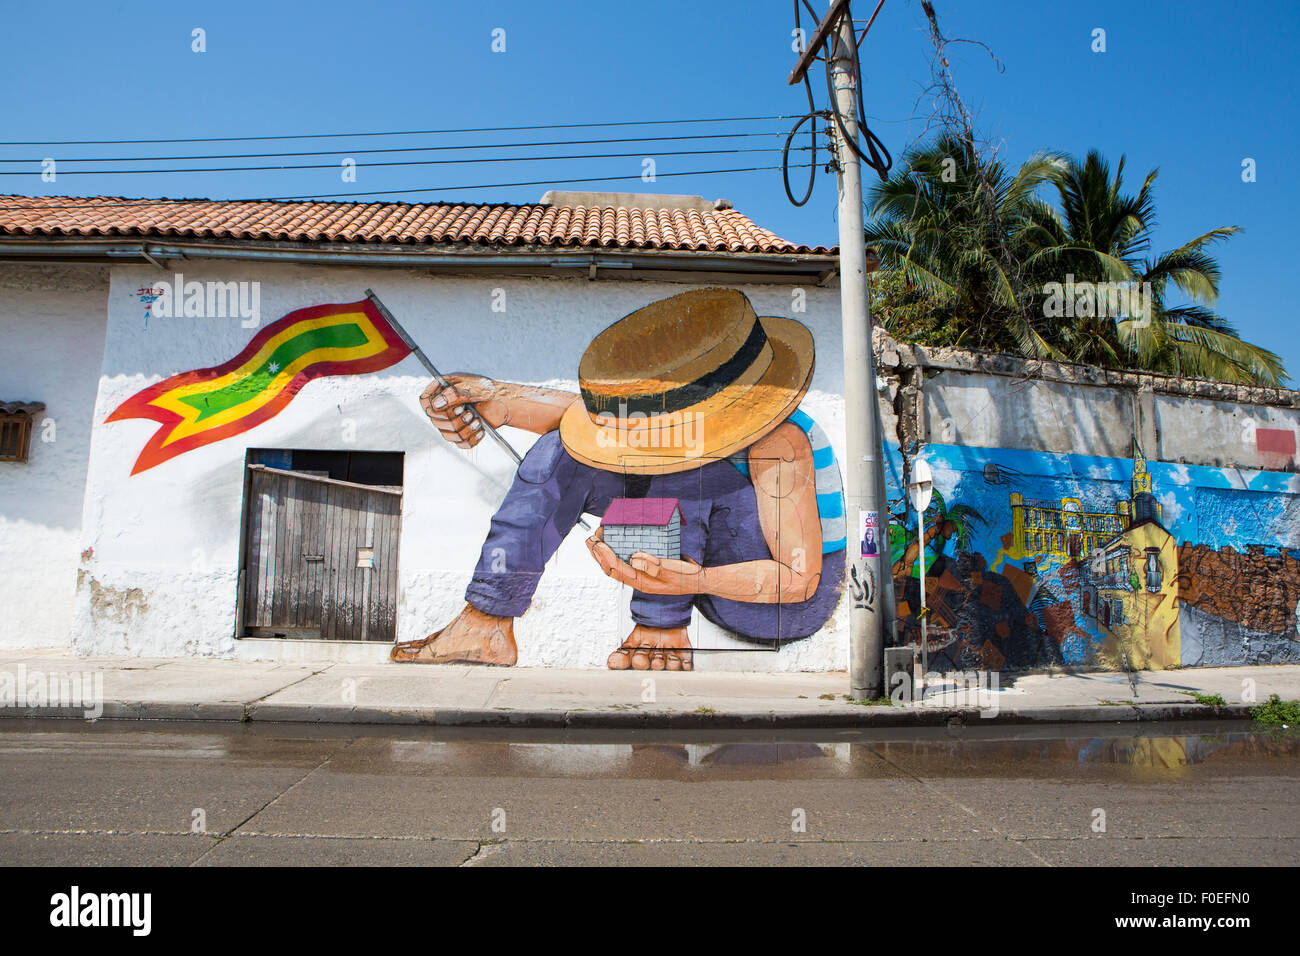 Graffiti dans les vieilles rues de Cartagena en Colombie. Faites par Jade en 2013. Ciel bleu en arrière-plan. Banque D'Images